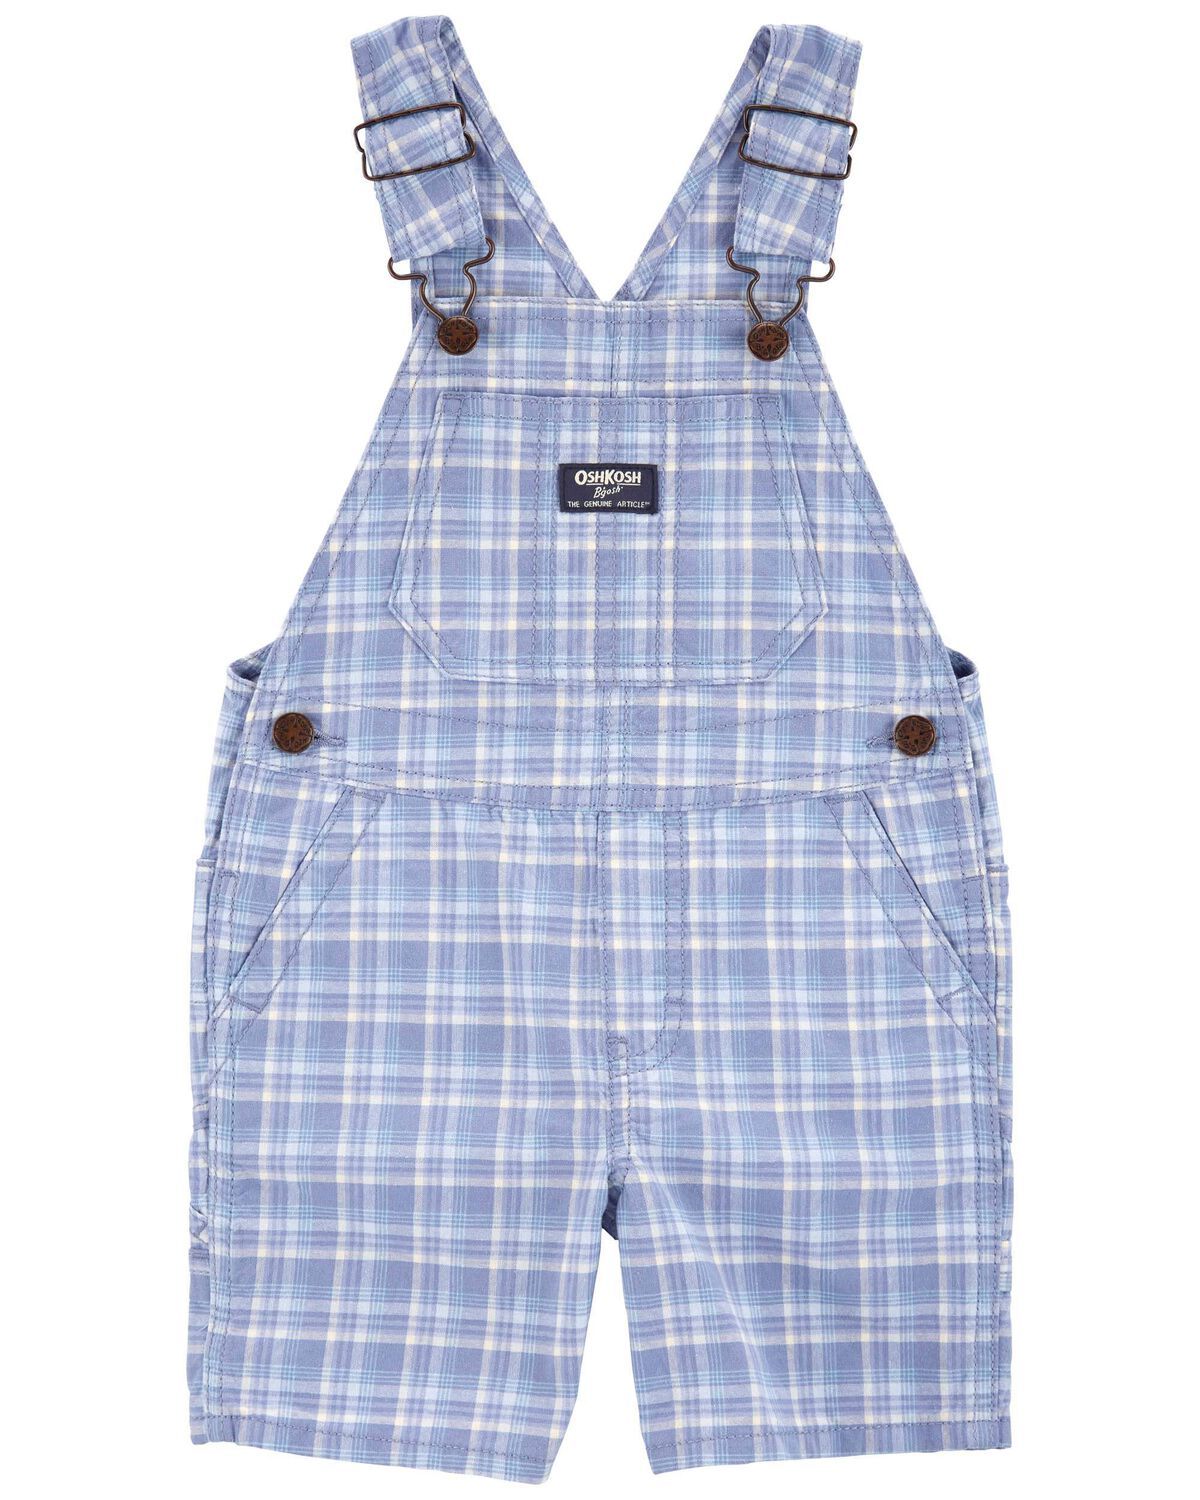 Blue Toddler Plaid Shortalls | oshkosh.com | OshKosh B'gosh